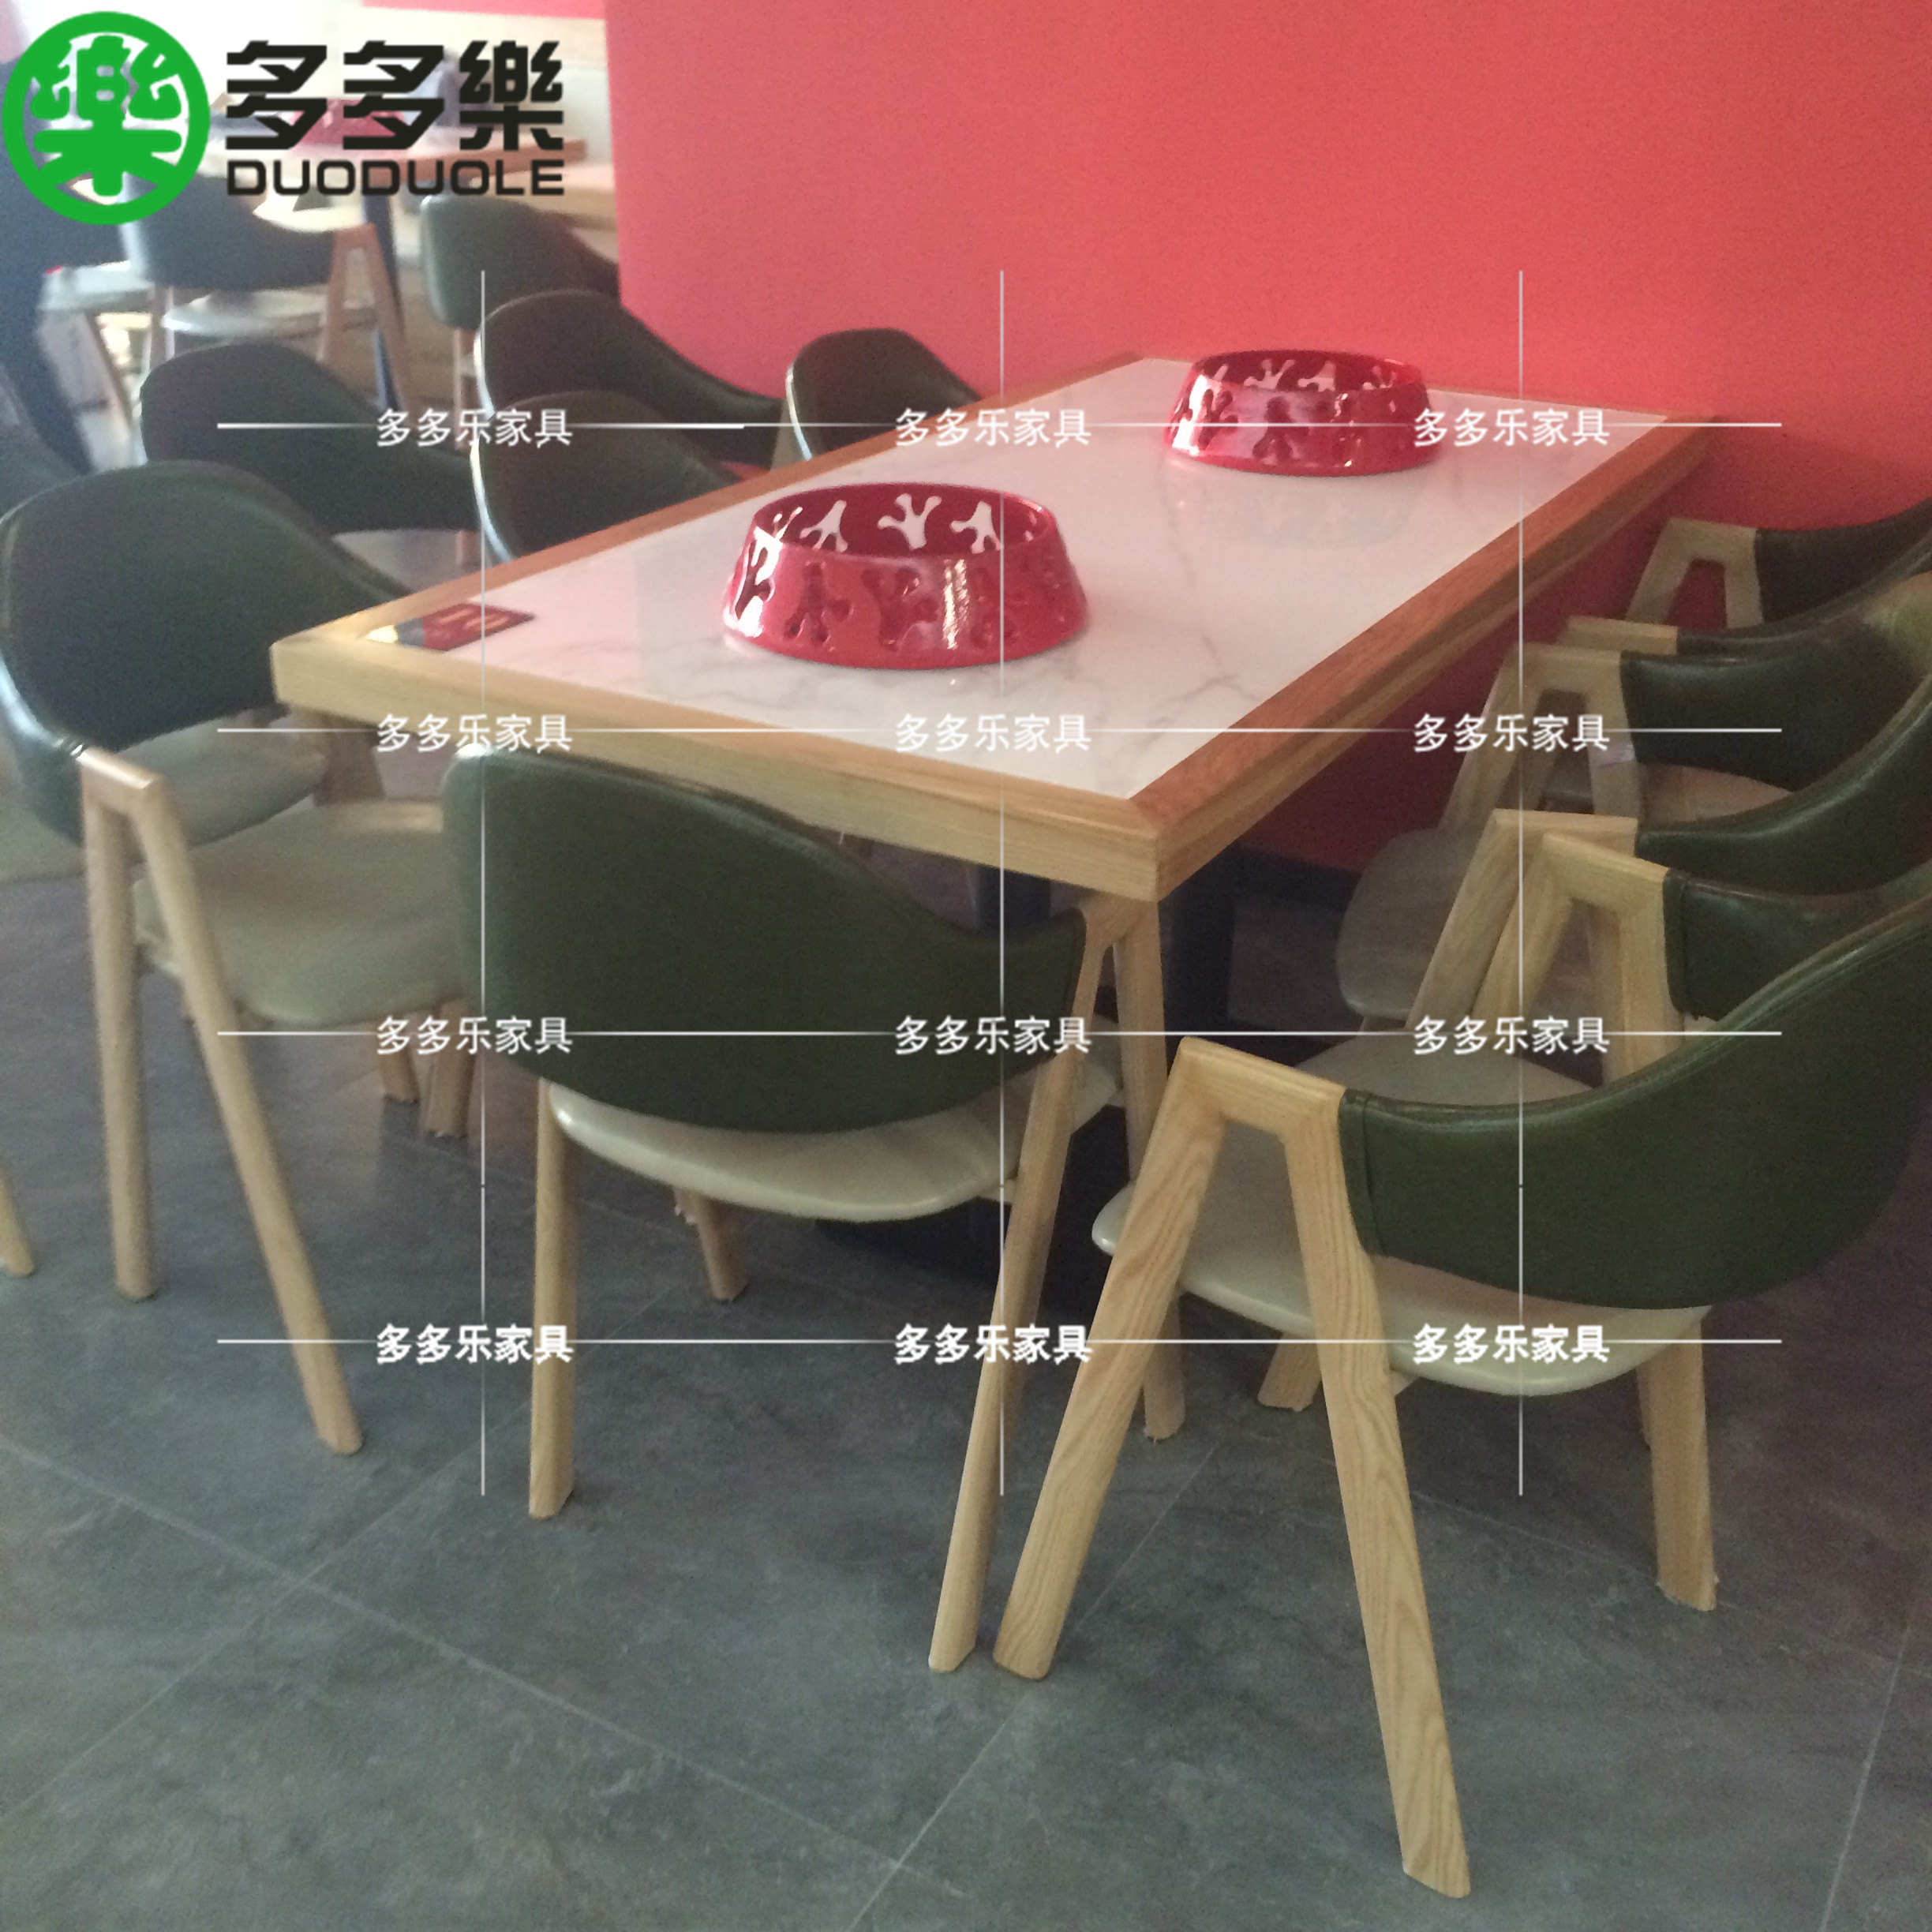 现代简约实木餐桌椅供应 新中式餐饮家具定做厂家4